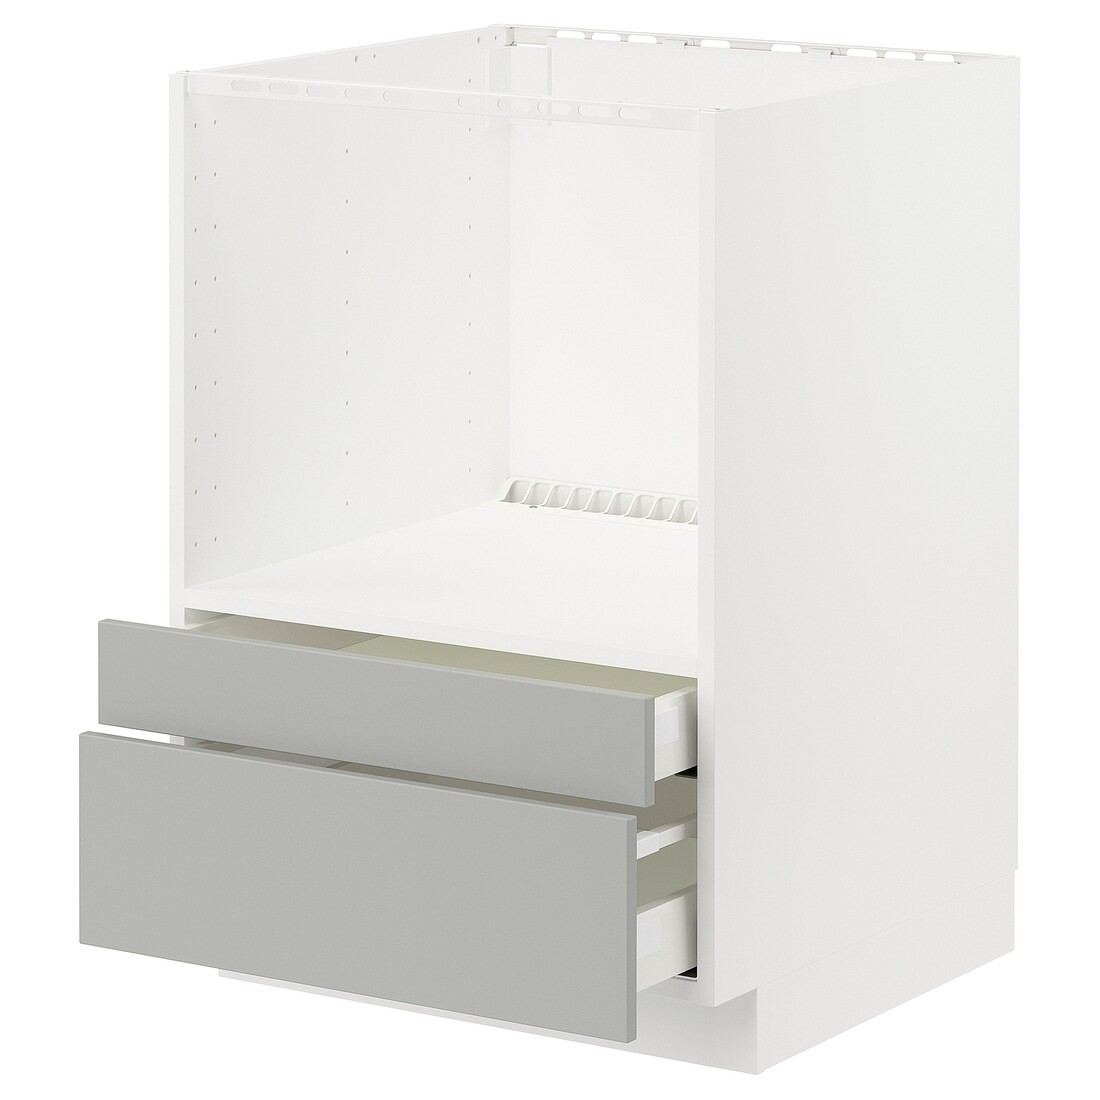 METOD / MAXIMERA Напольный шкаф для комби СВЧ / выдвижные ящики, белый / Хавсторп светло-серый, 60x60 см